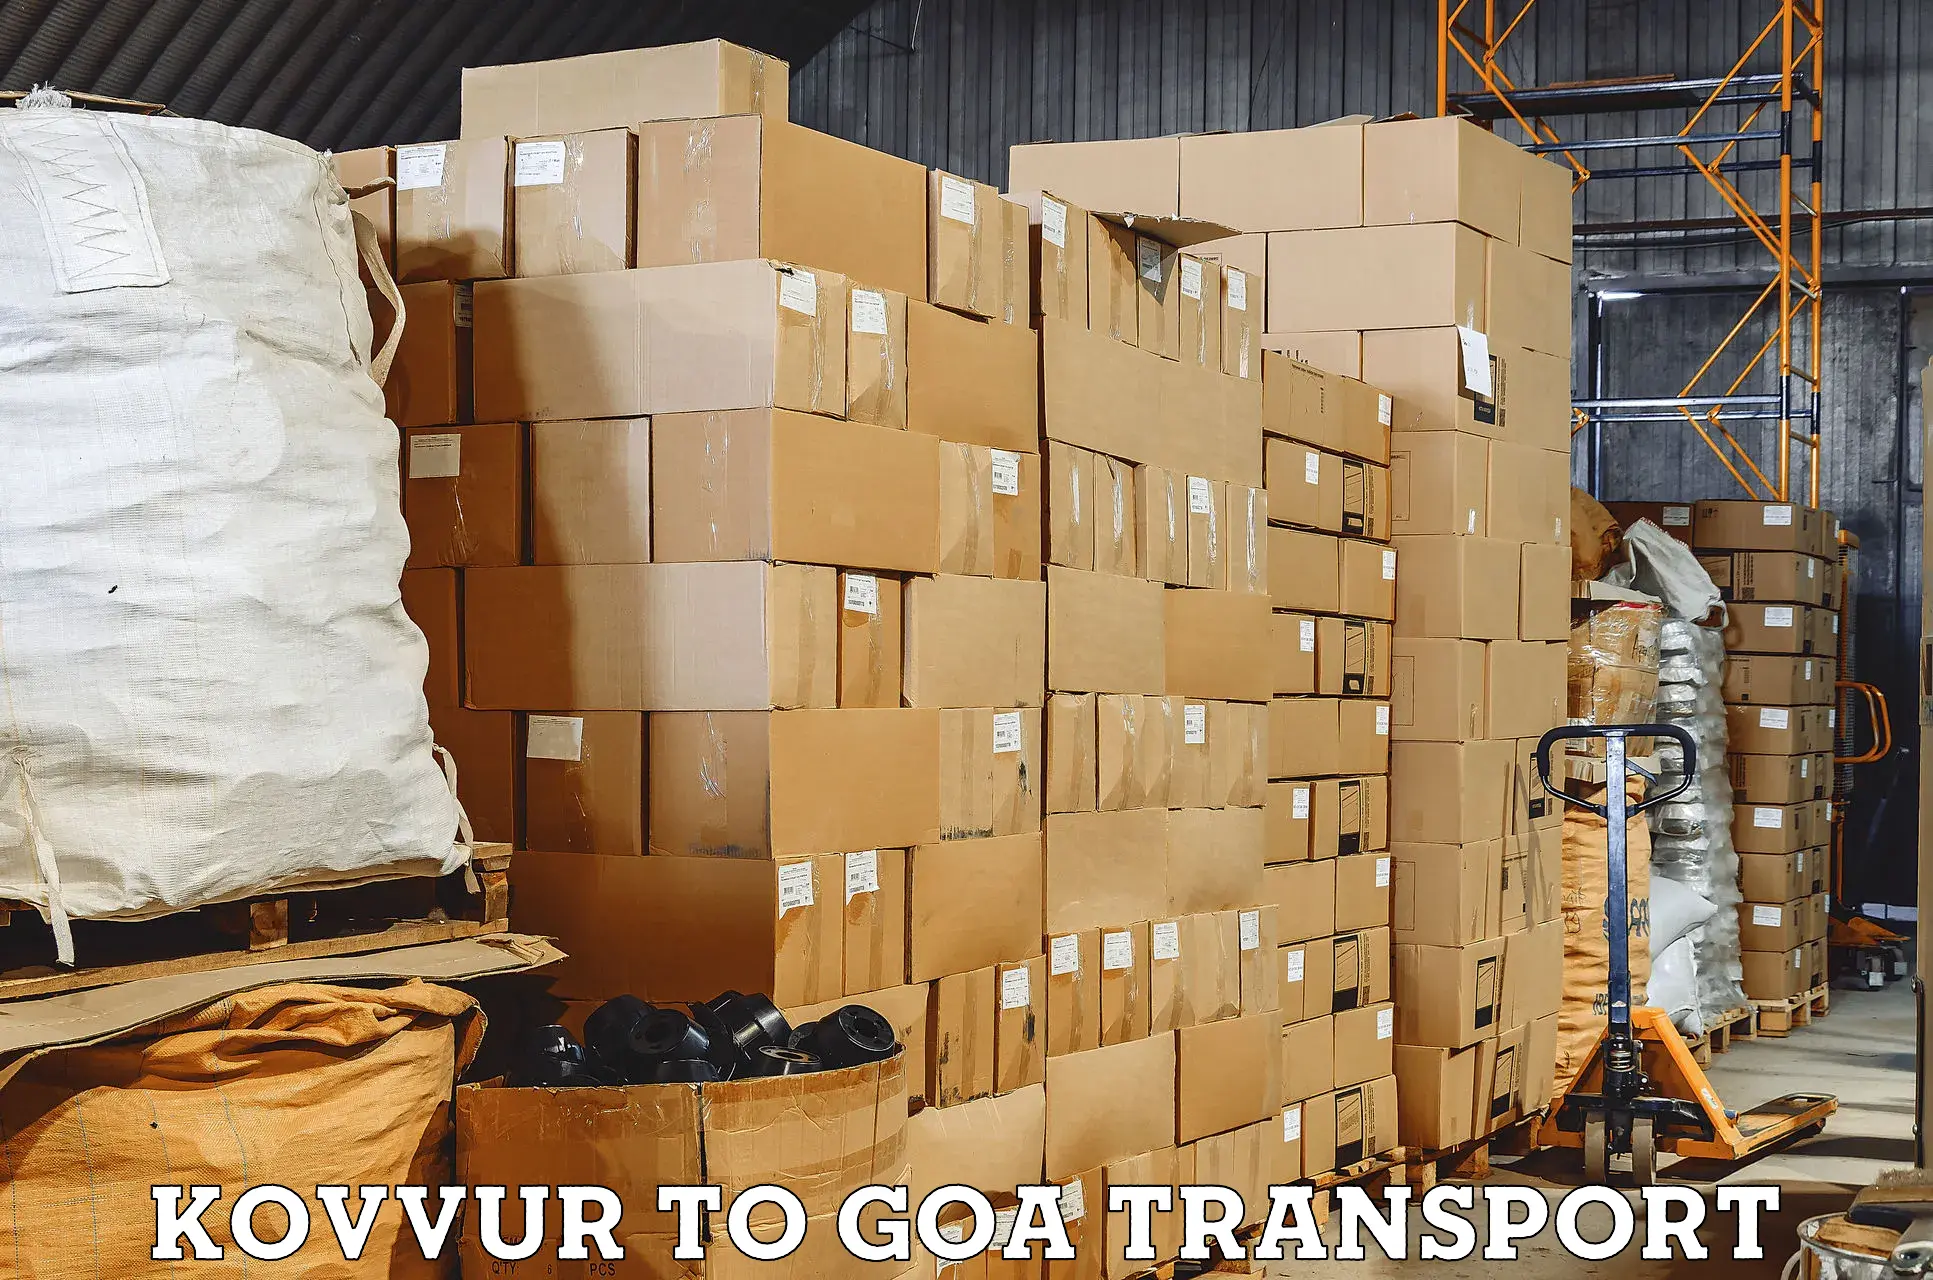 Daily parcel service transport Kovvur to Mormugao Port